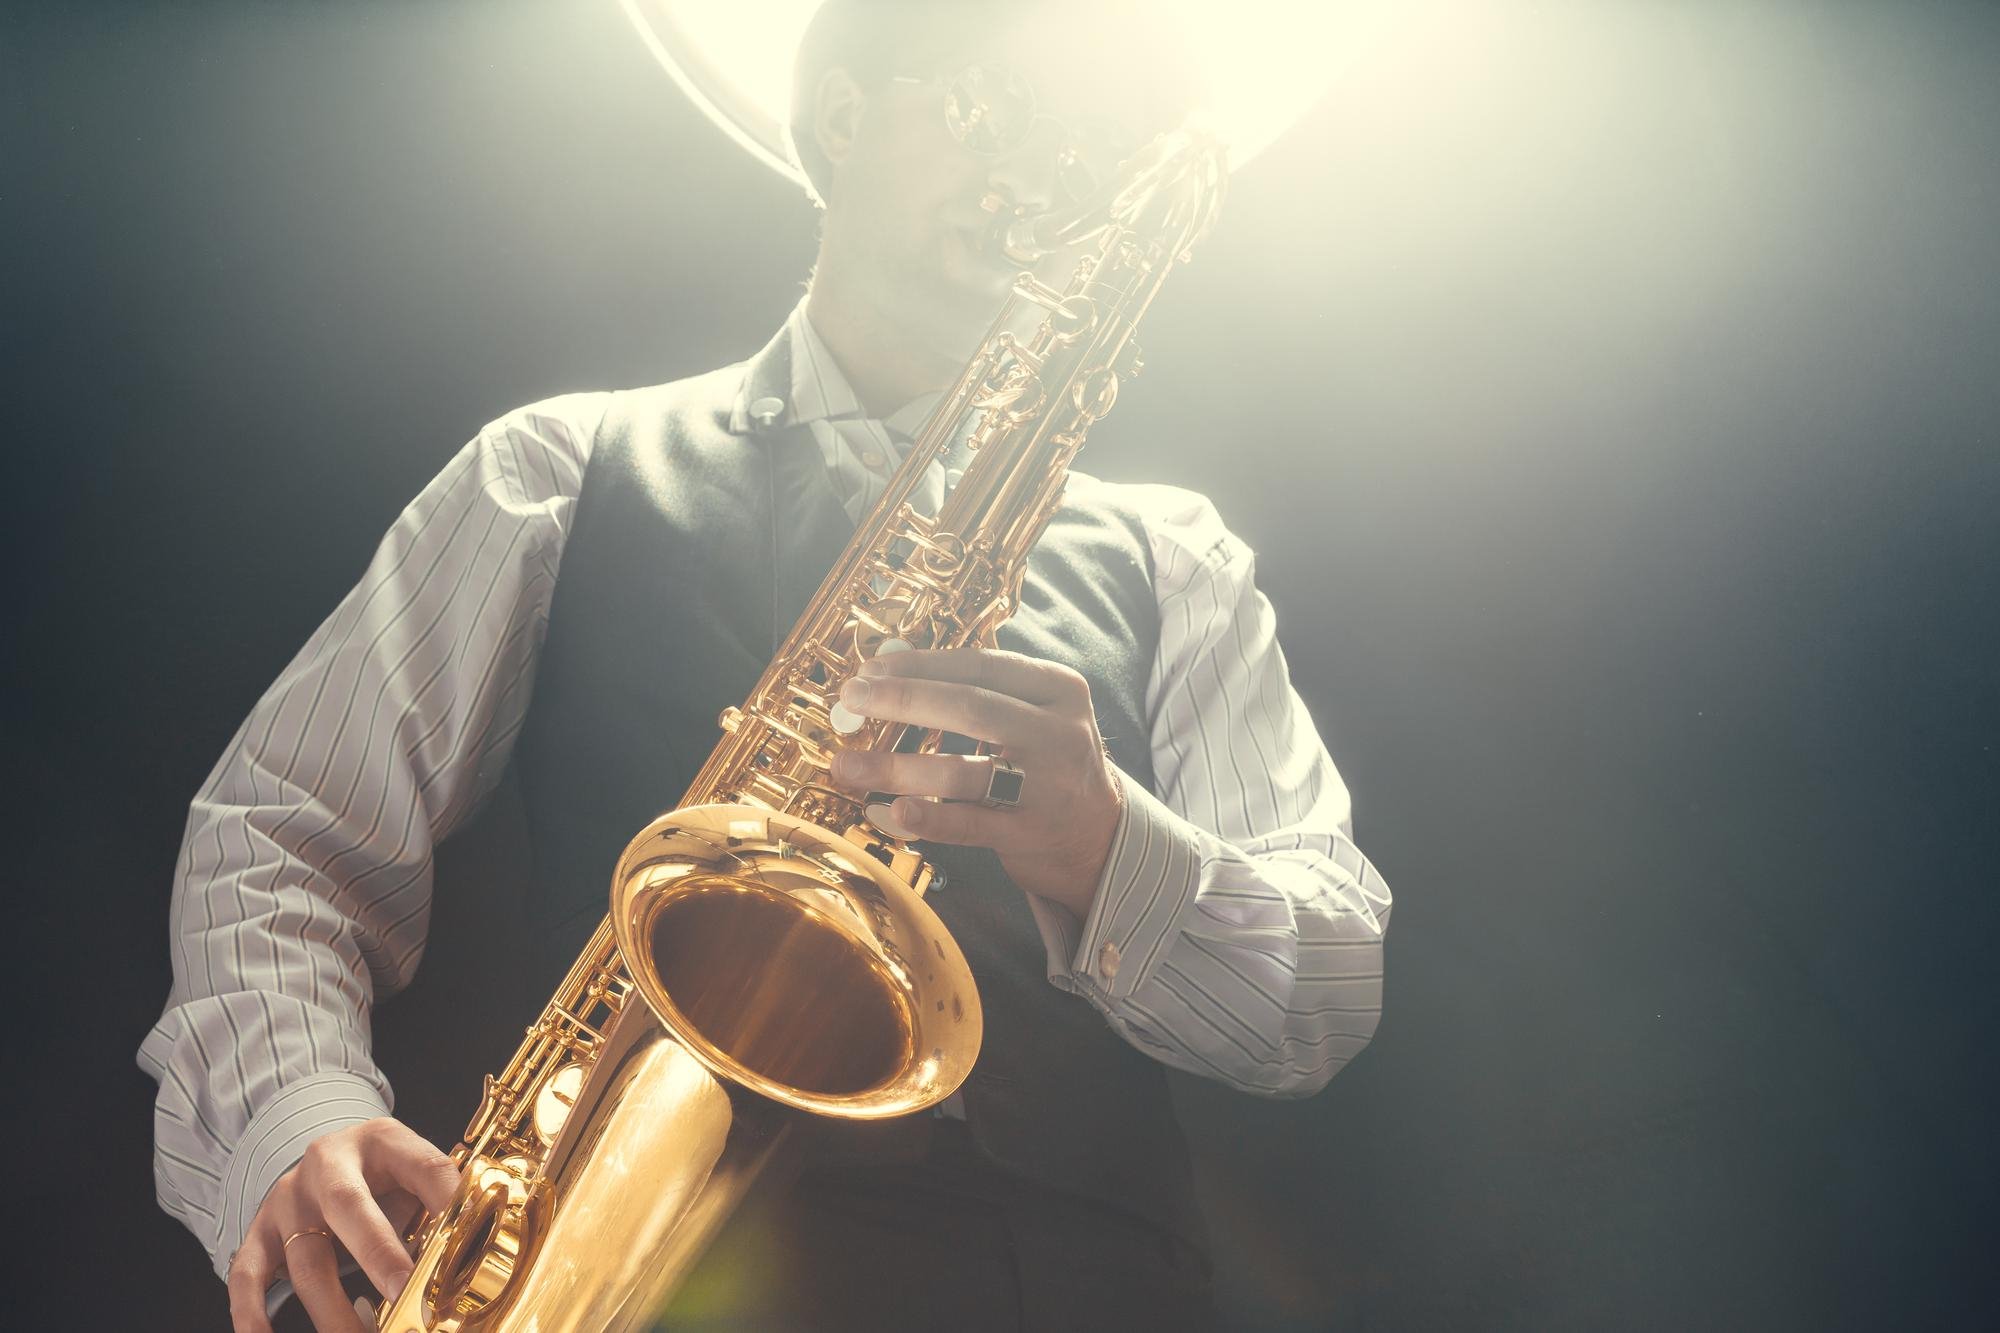 imagem mostra um homem tocando um instrumento do circuito de jazz